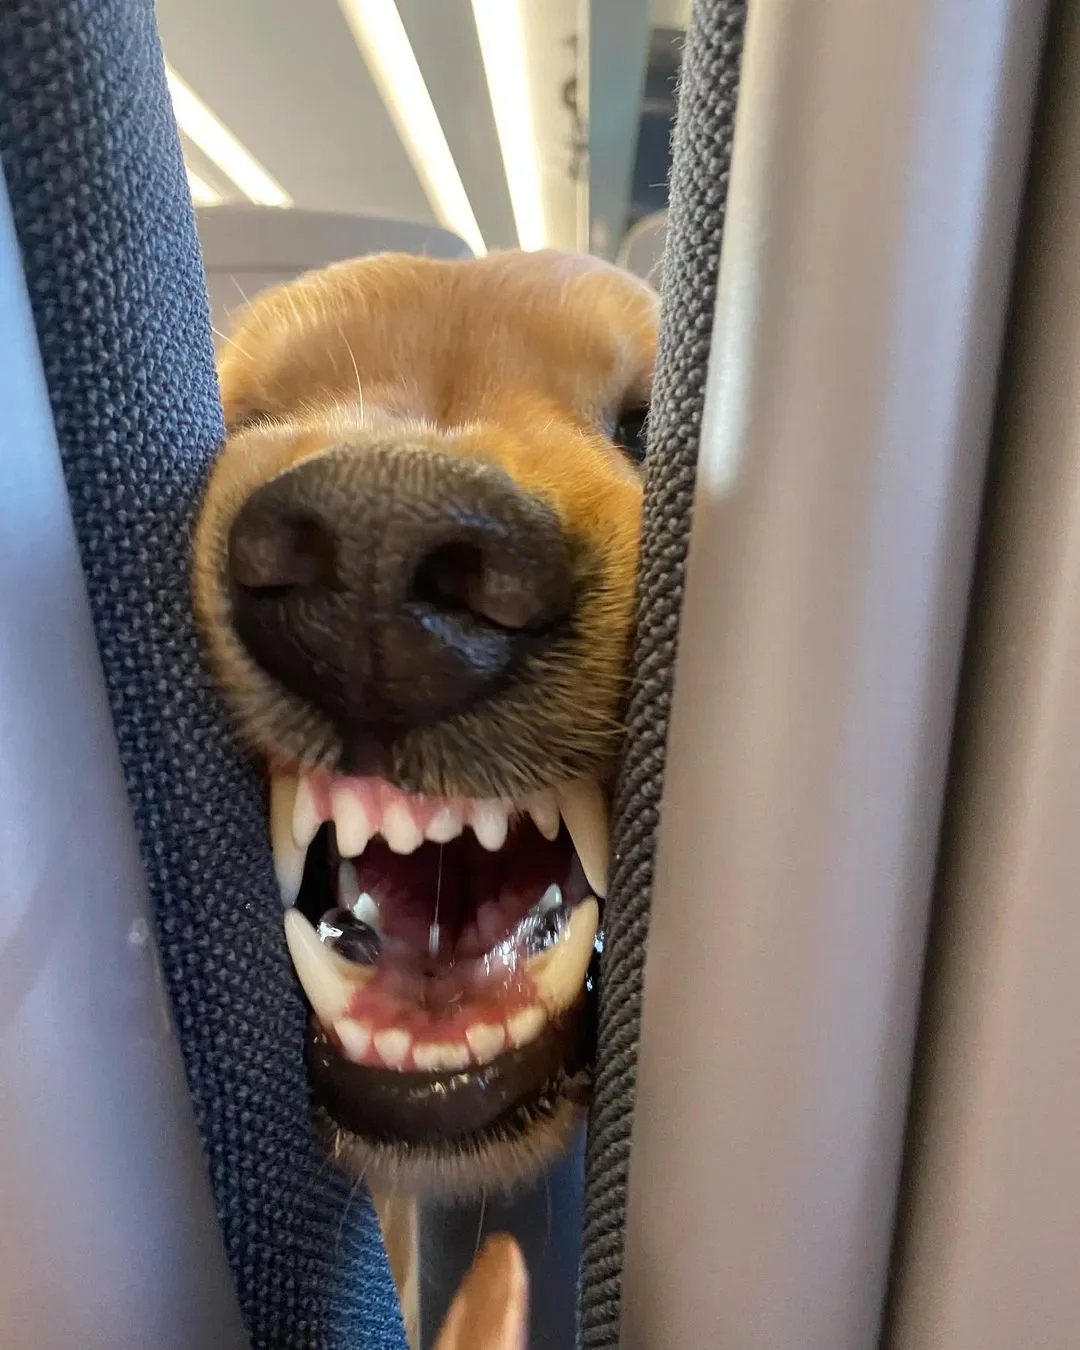 รีแอคชั่นหมา ขนมบนรถไฟ